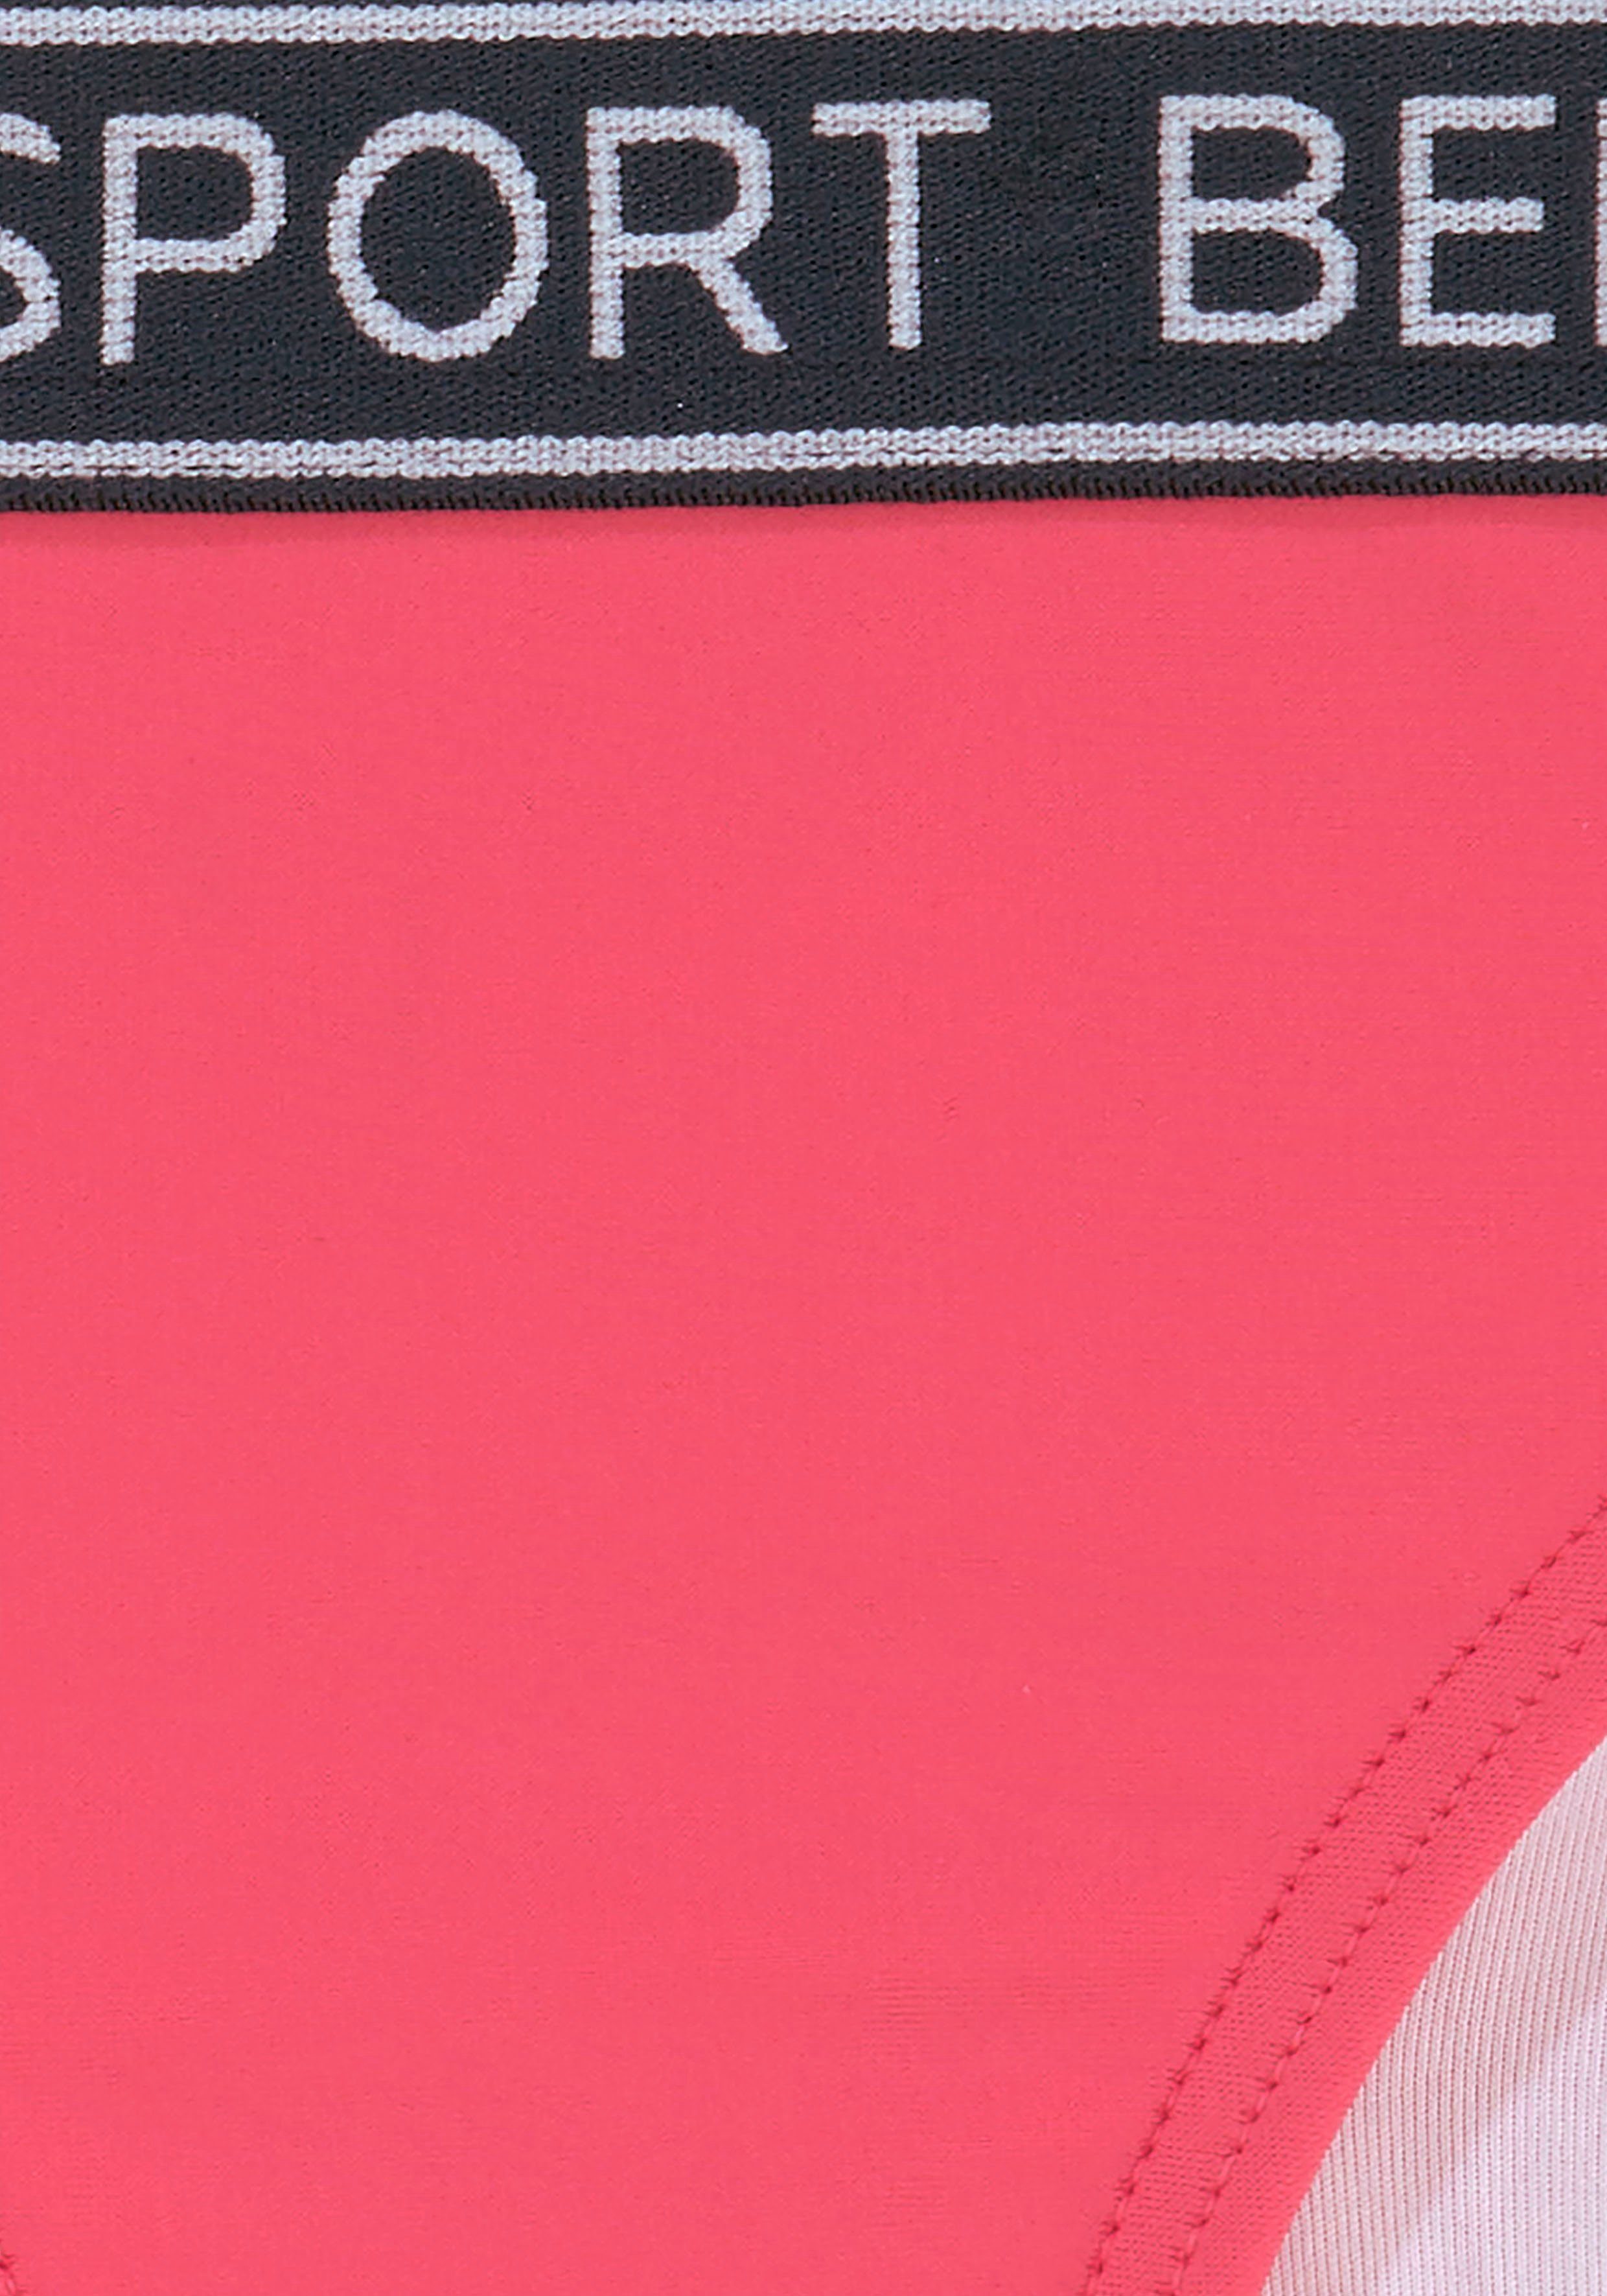 Triangel-Bikini in Farben und sportlichem pink Bench. Kids Yva Design